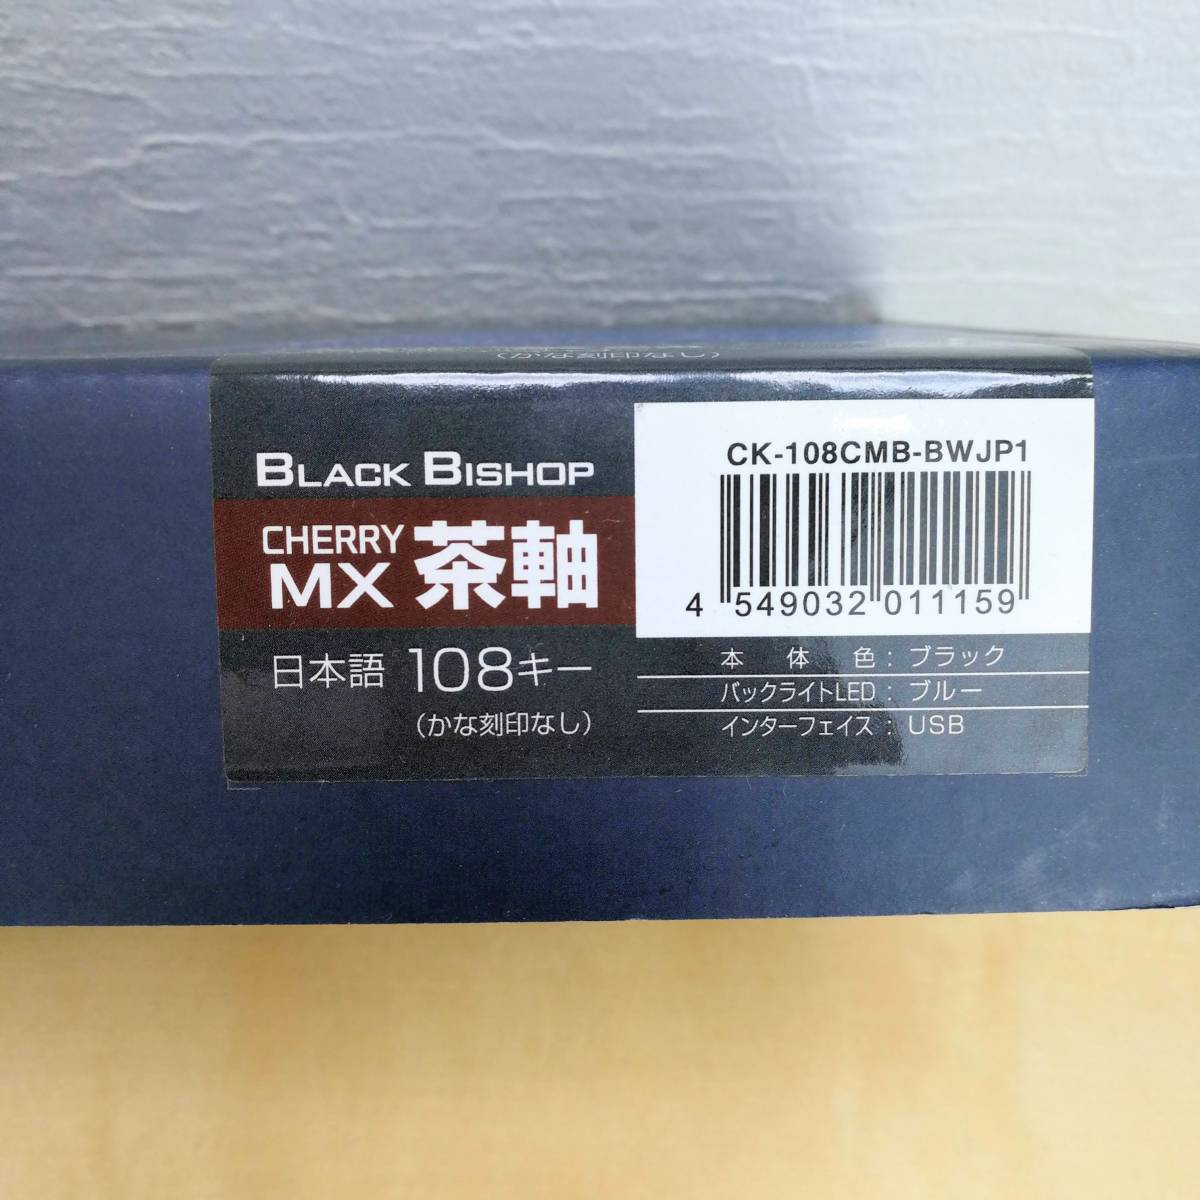 センチュリー CHERRYメカニカルキーボード 108キー/日本語配列 『BLACK BISHOP 茶軸』 CK-108CMB-BWJP1 (品)